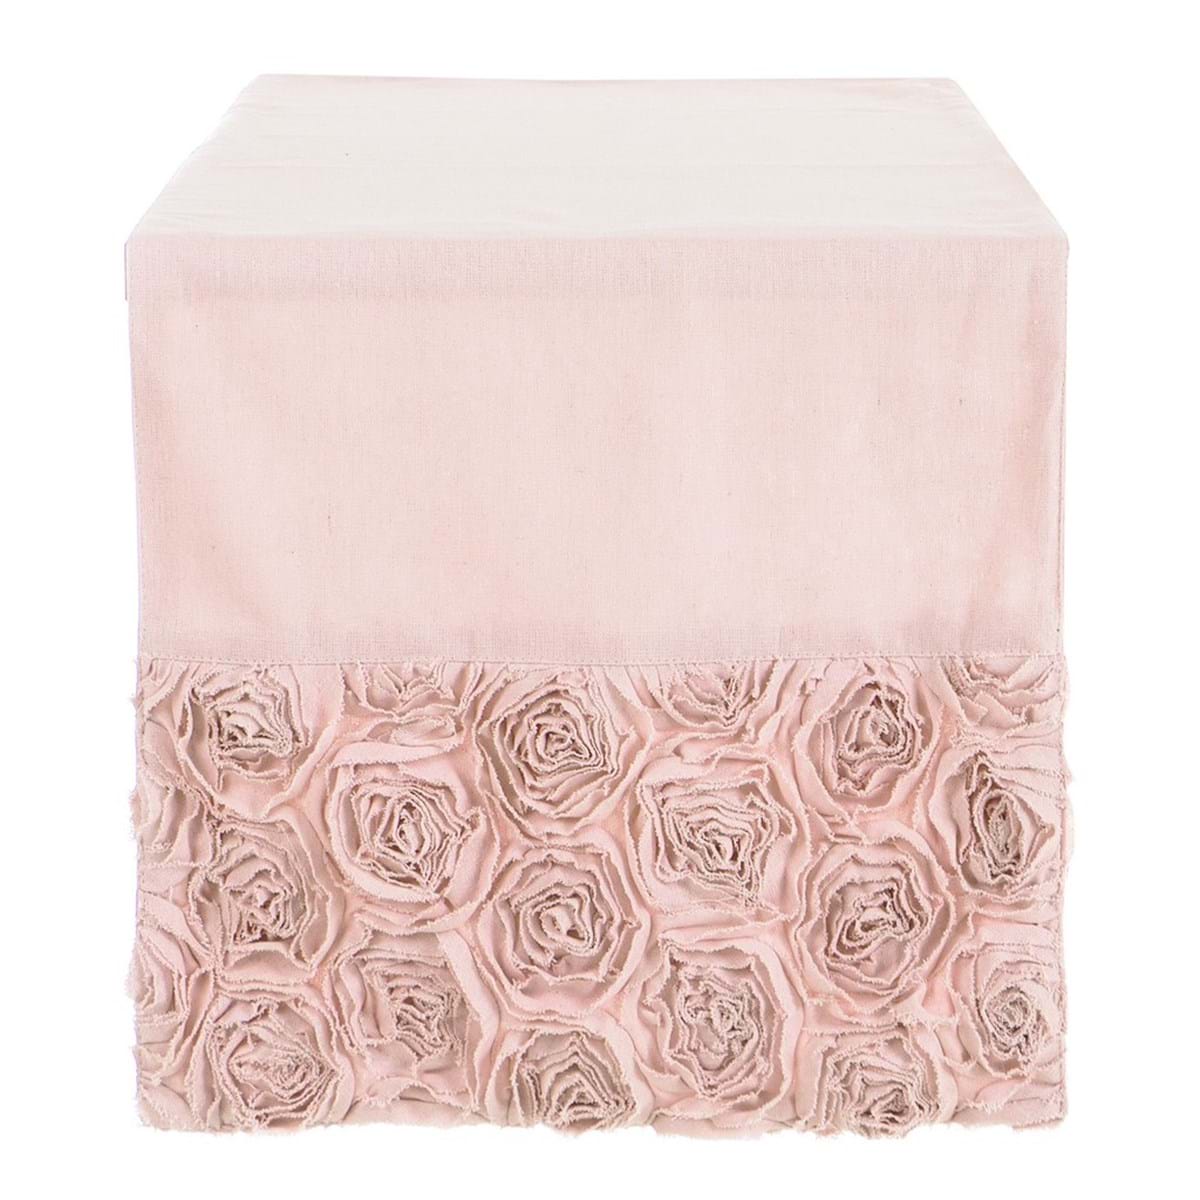 Tischläufer Rosen Rüschen rosa 45 x 150 cm I